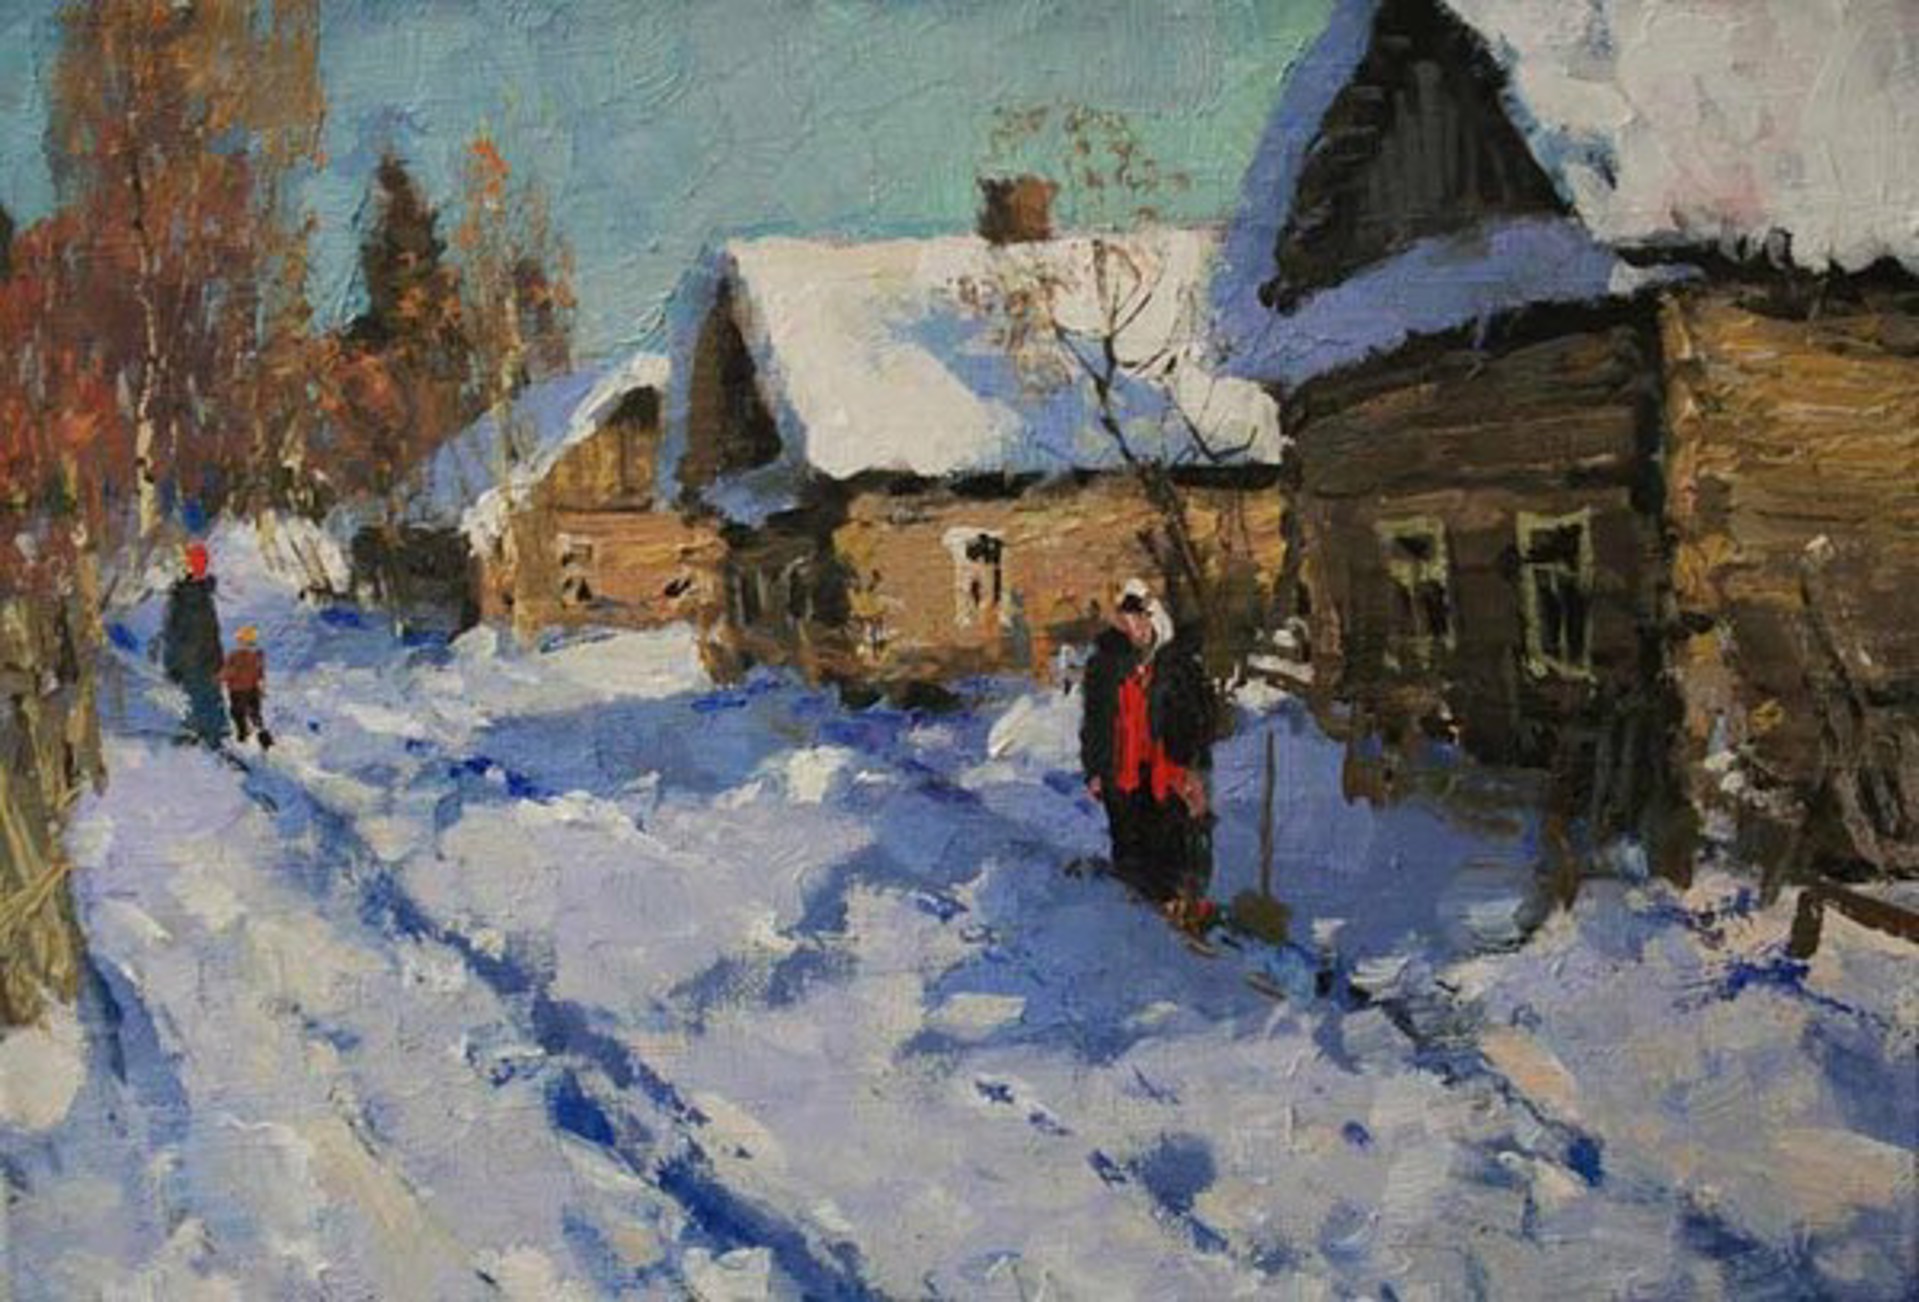 Snowy Day by Alexander Kremer